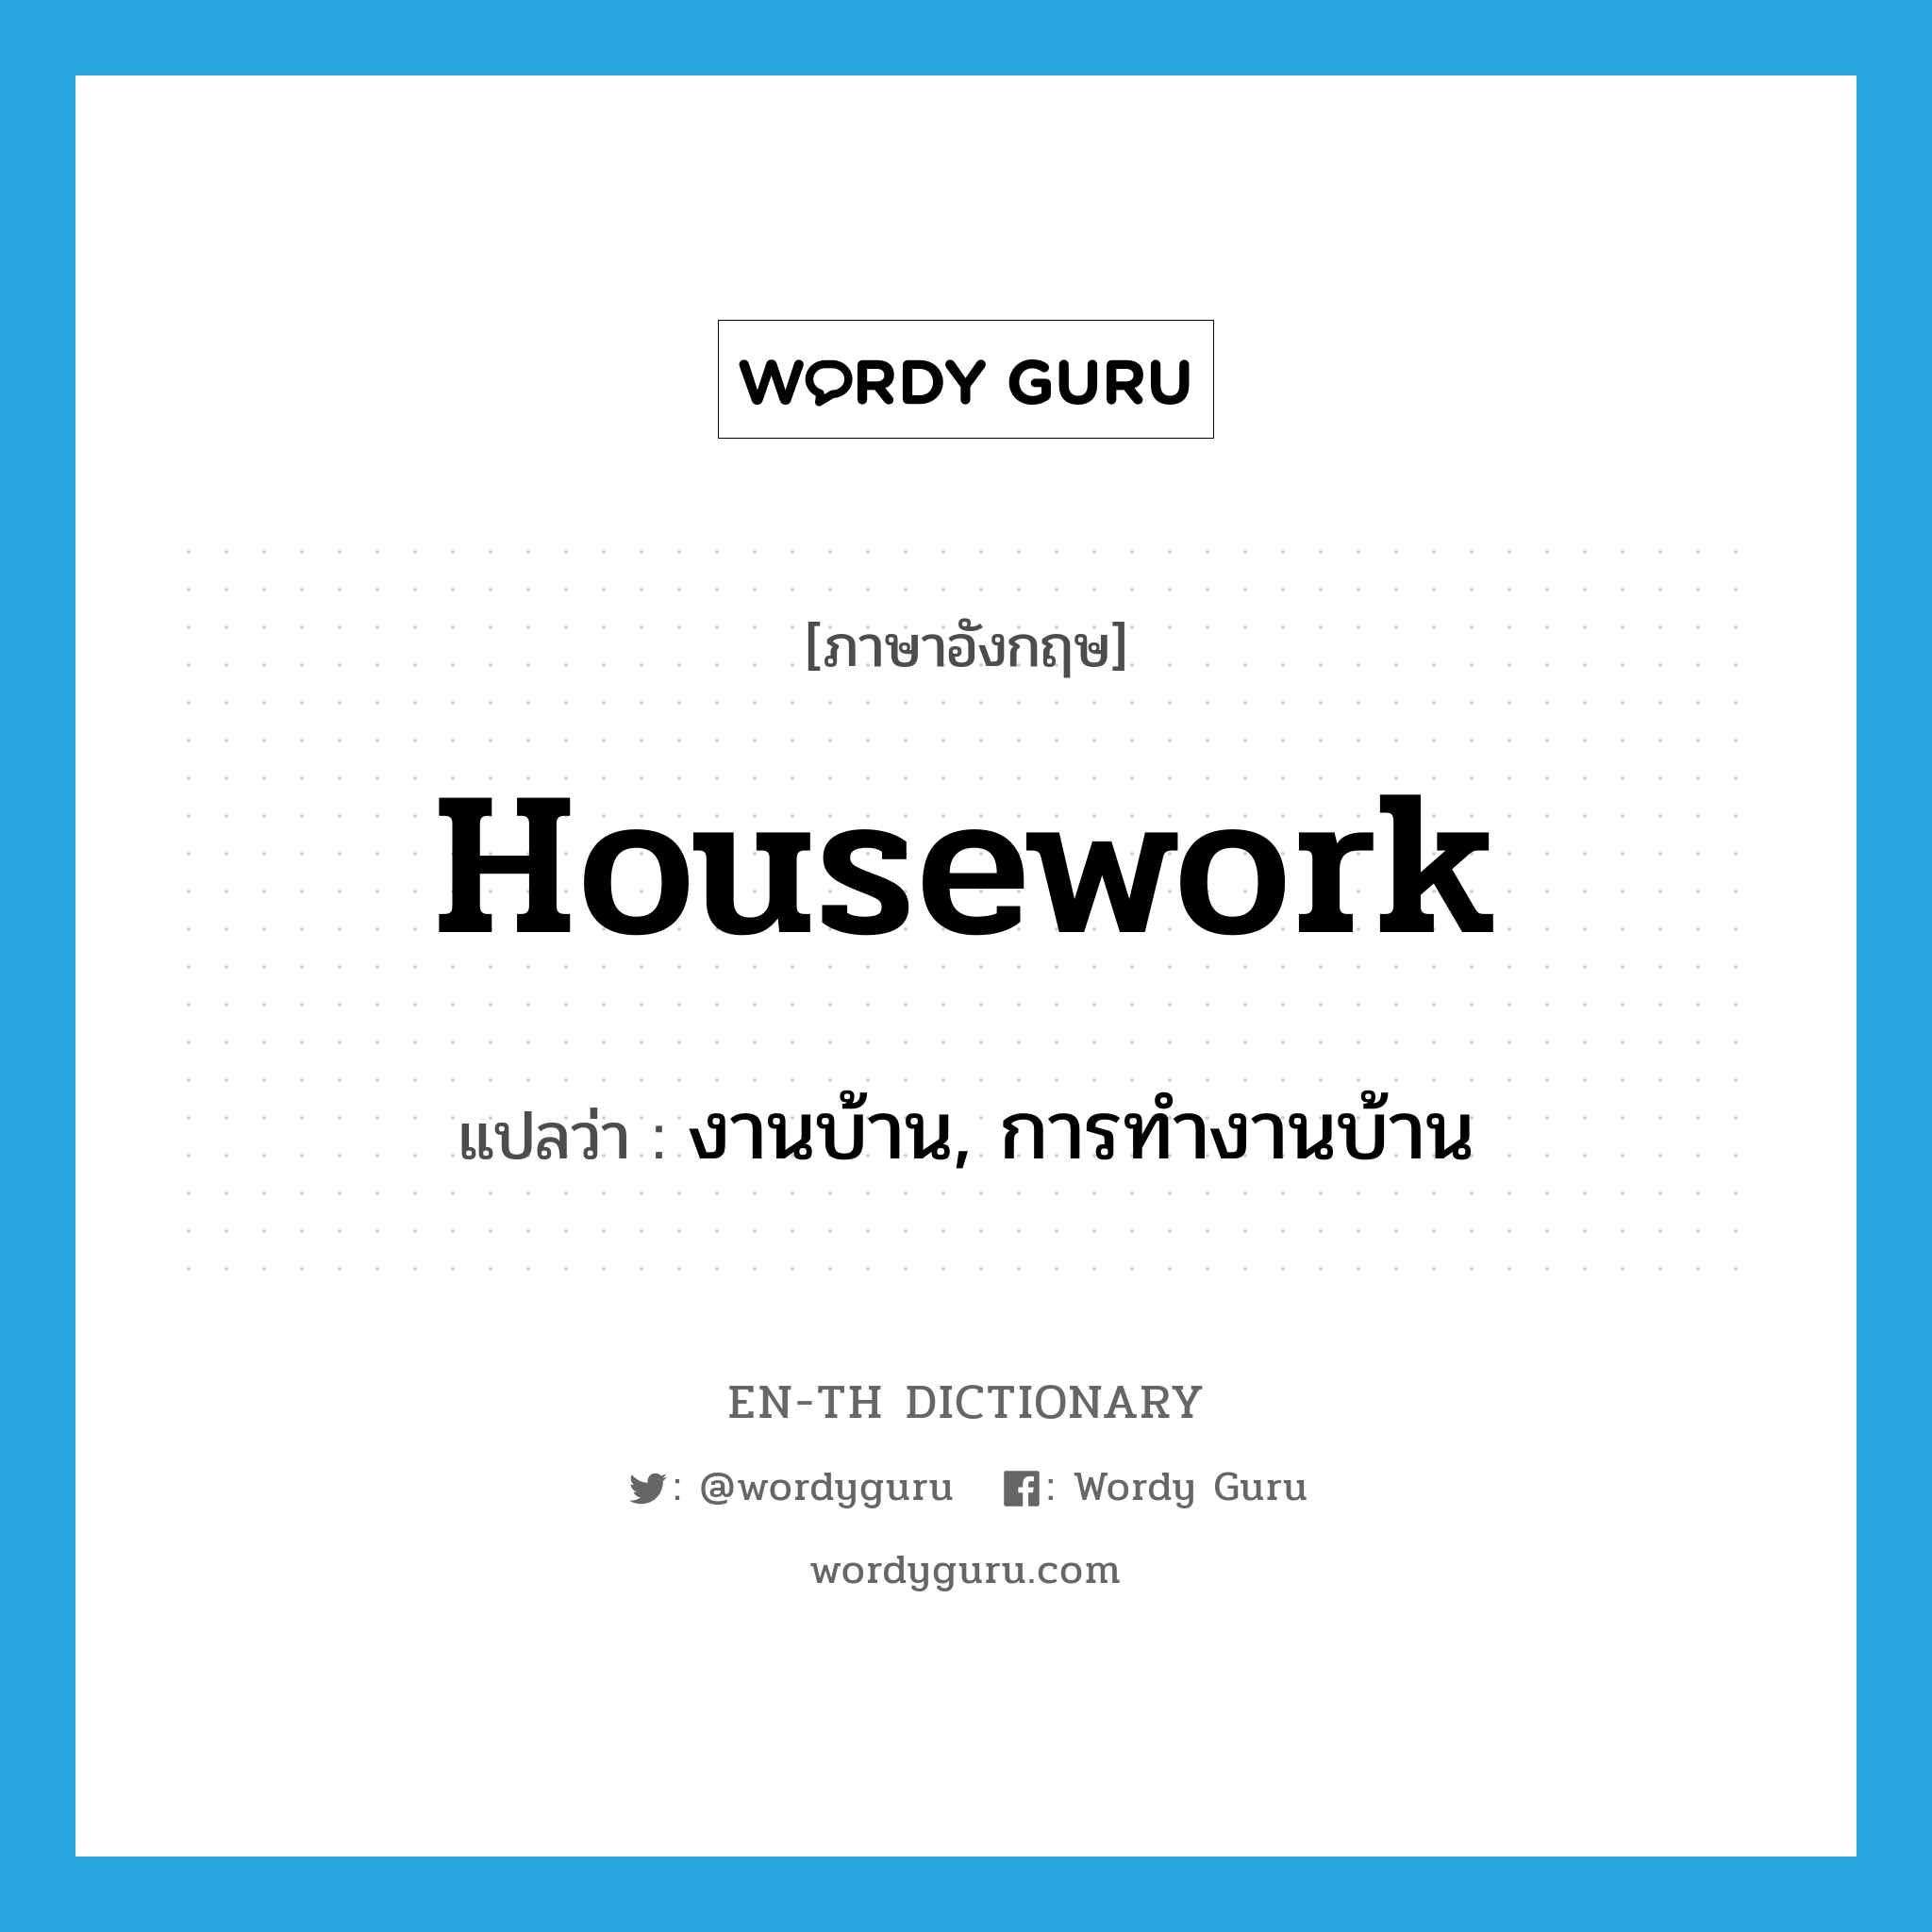 งานบ้าน, การทำงานบ้าน ภาษาอังกฤษ?, คำศัพท์ภาษาอังกฤษ งานบ้าน, การทำงานบ้าน แปลว่า housework ประเภท N หมวด N